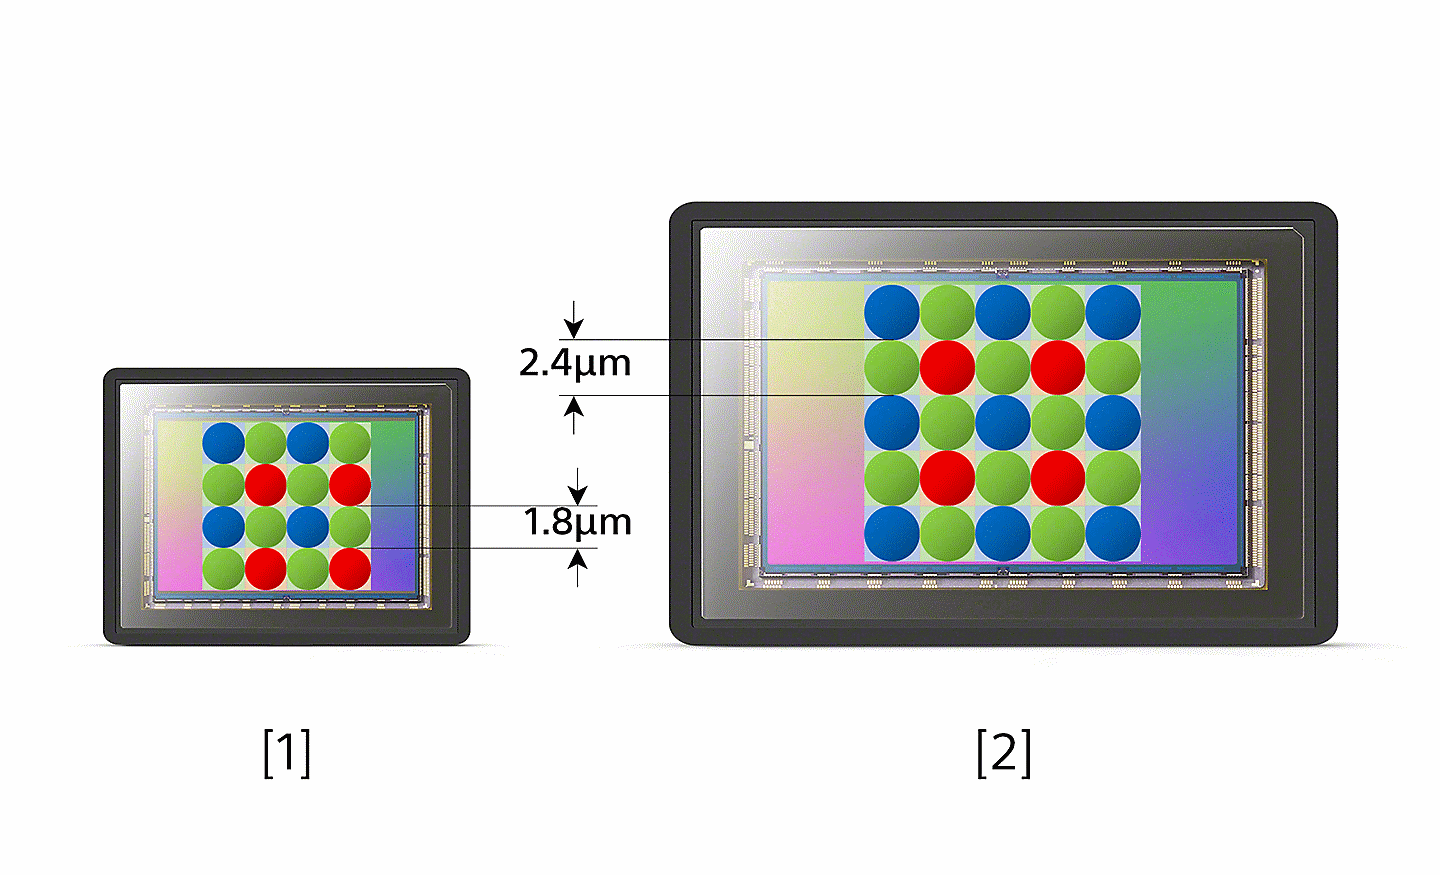 傳統影像感測器與 Xperia 1.0 型影像感測器的像素間距對比圖